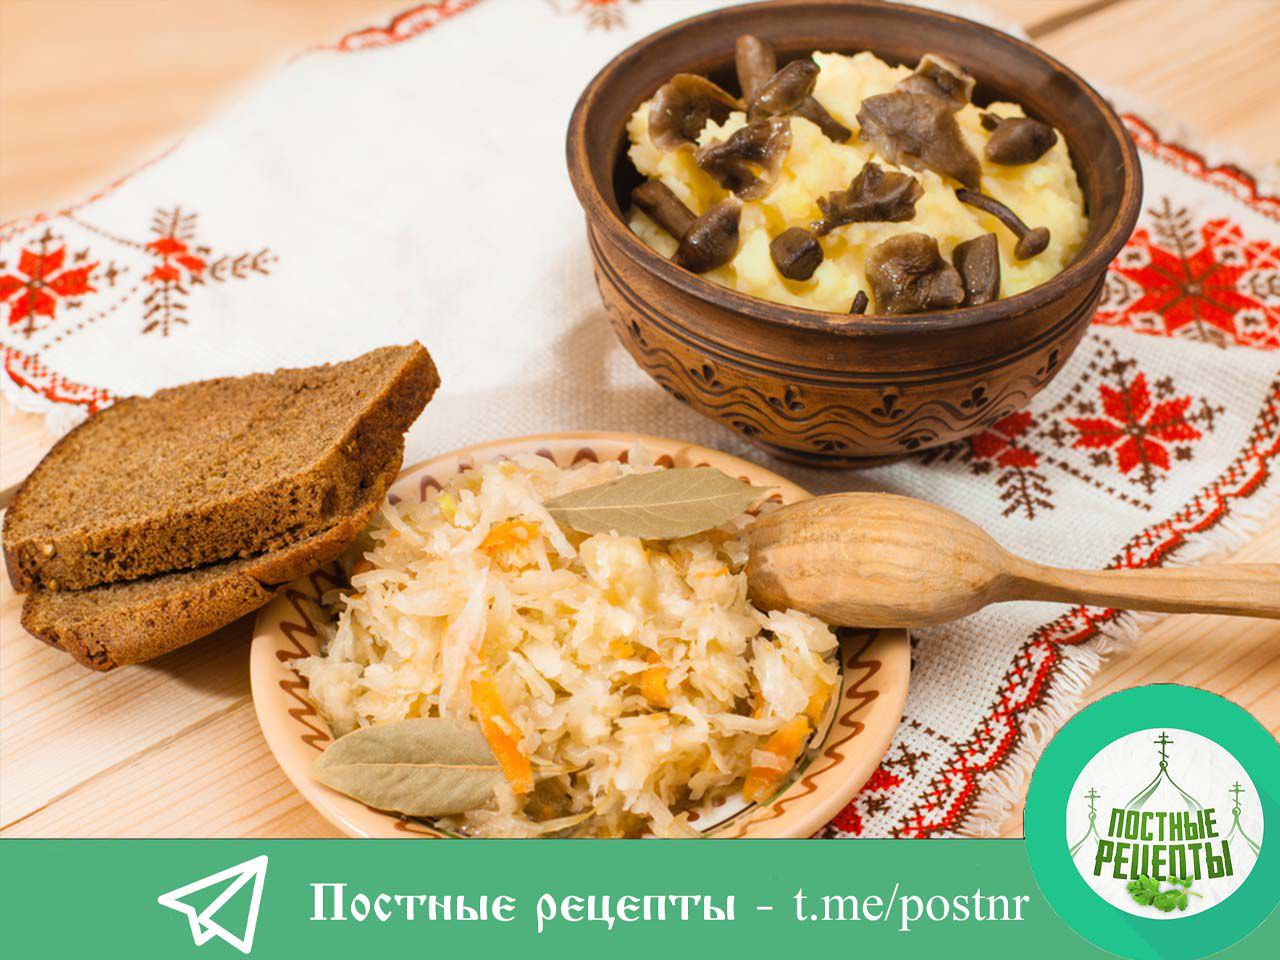 культура приготовления пищи в православии фото